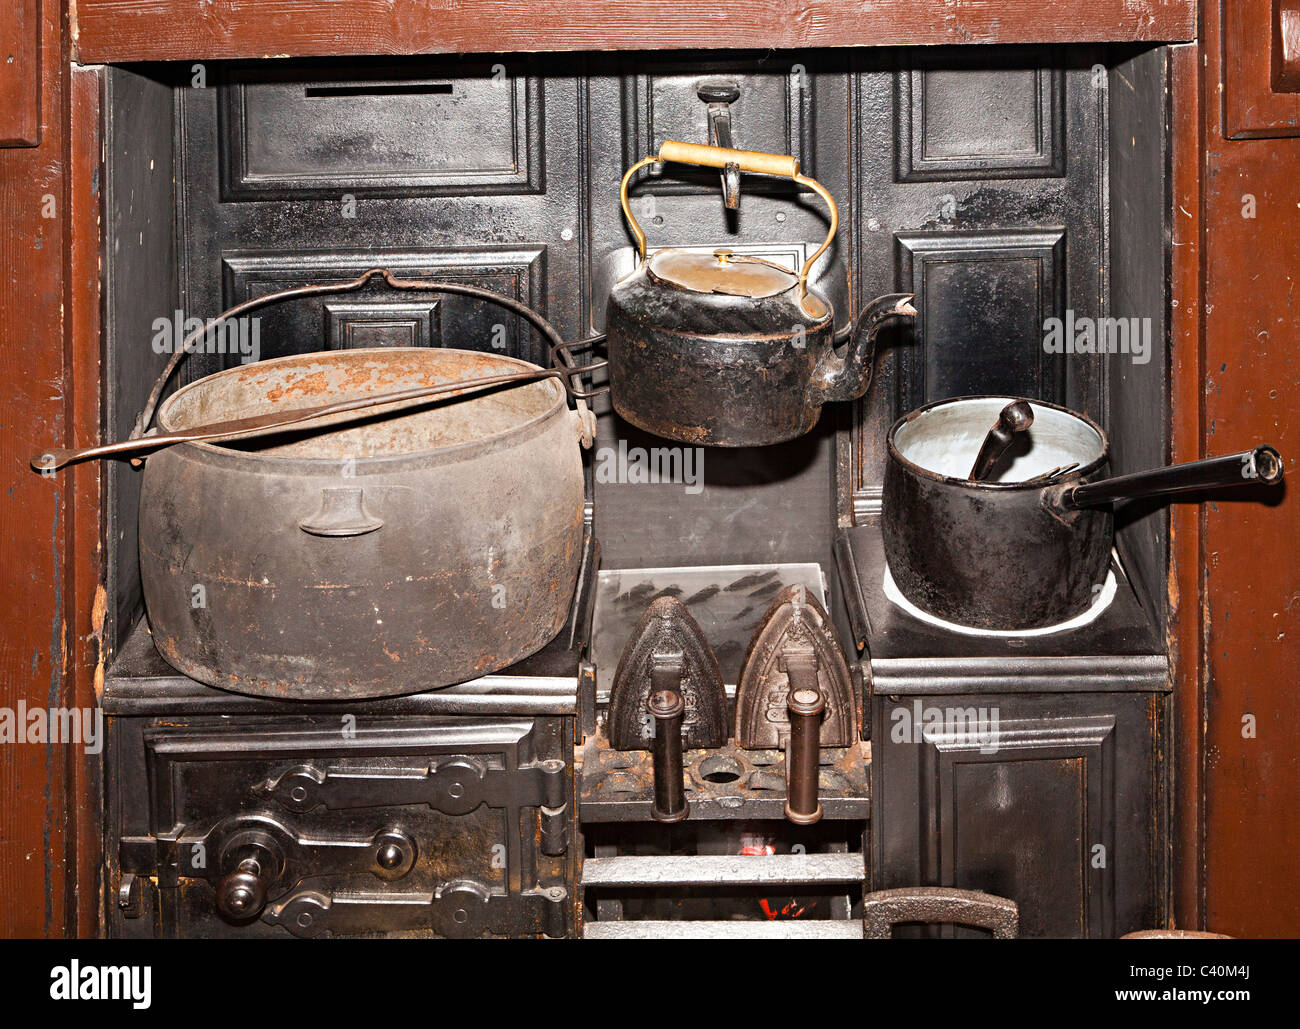 Topf Kessel Topf und Eisen auf Range in alten Küche Wales UK  Stockfotografie - Alamy